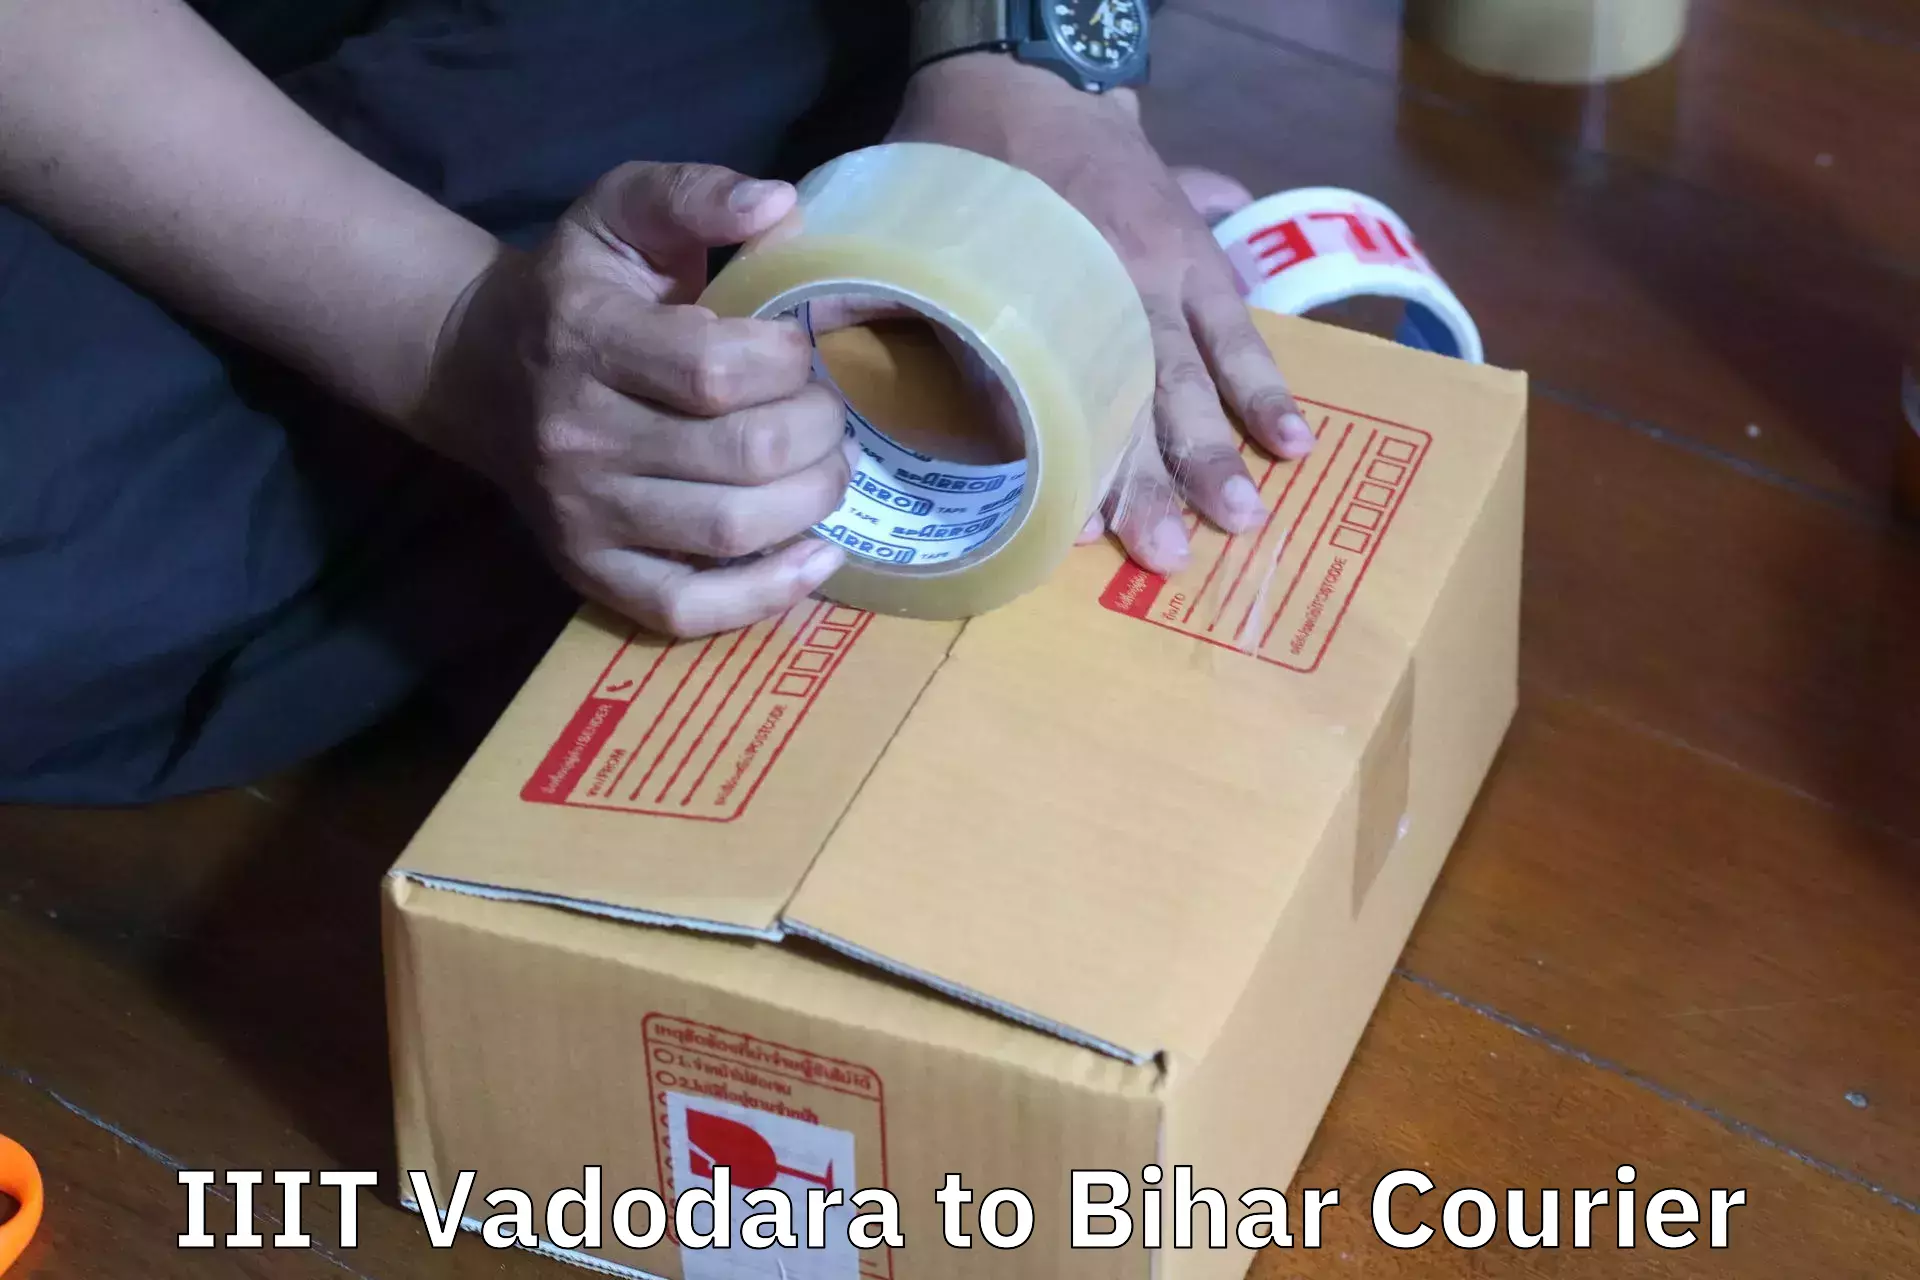 Reliable movers IIIT Vadodara to Biraul